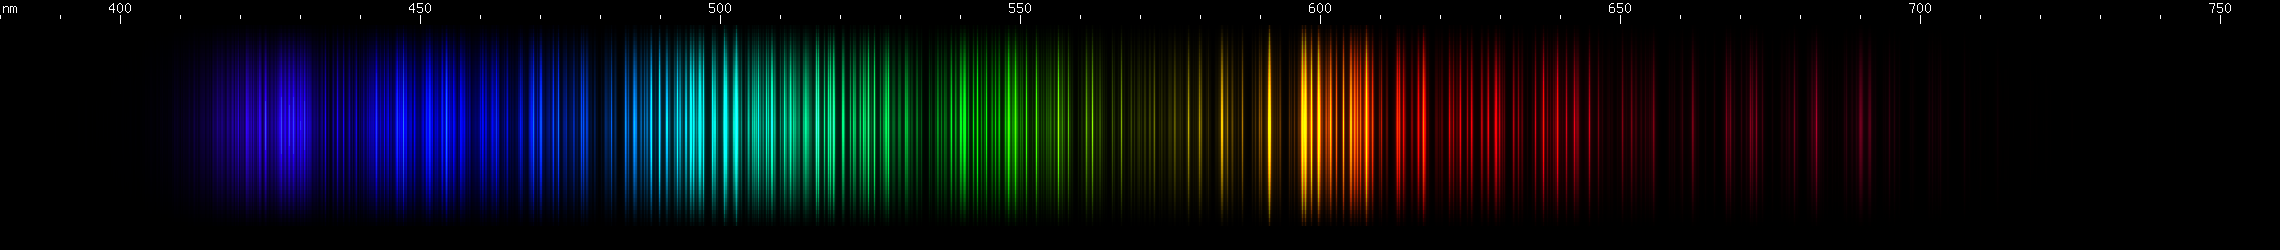 Spectral Lines of Uranium